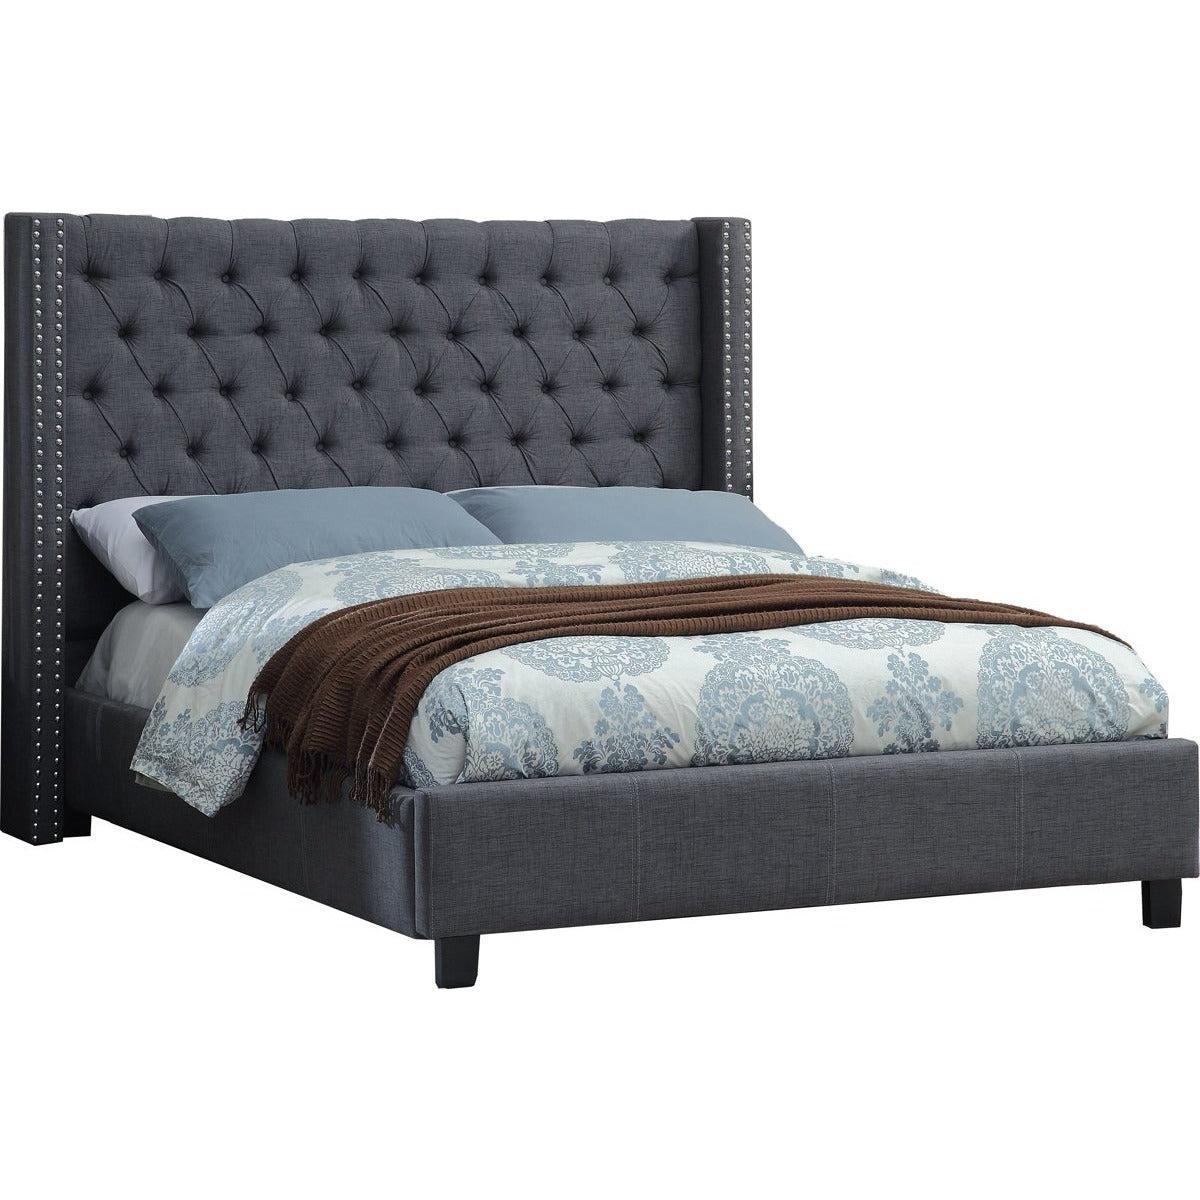 Meridian Furniture Ashton Grey Linen Full BedMeridian Furniture - Full Bed - Minimal And Modern - 1